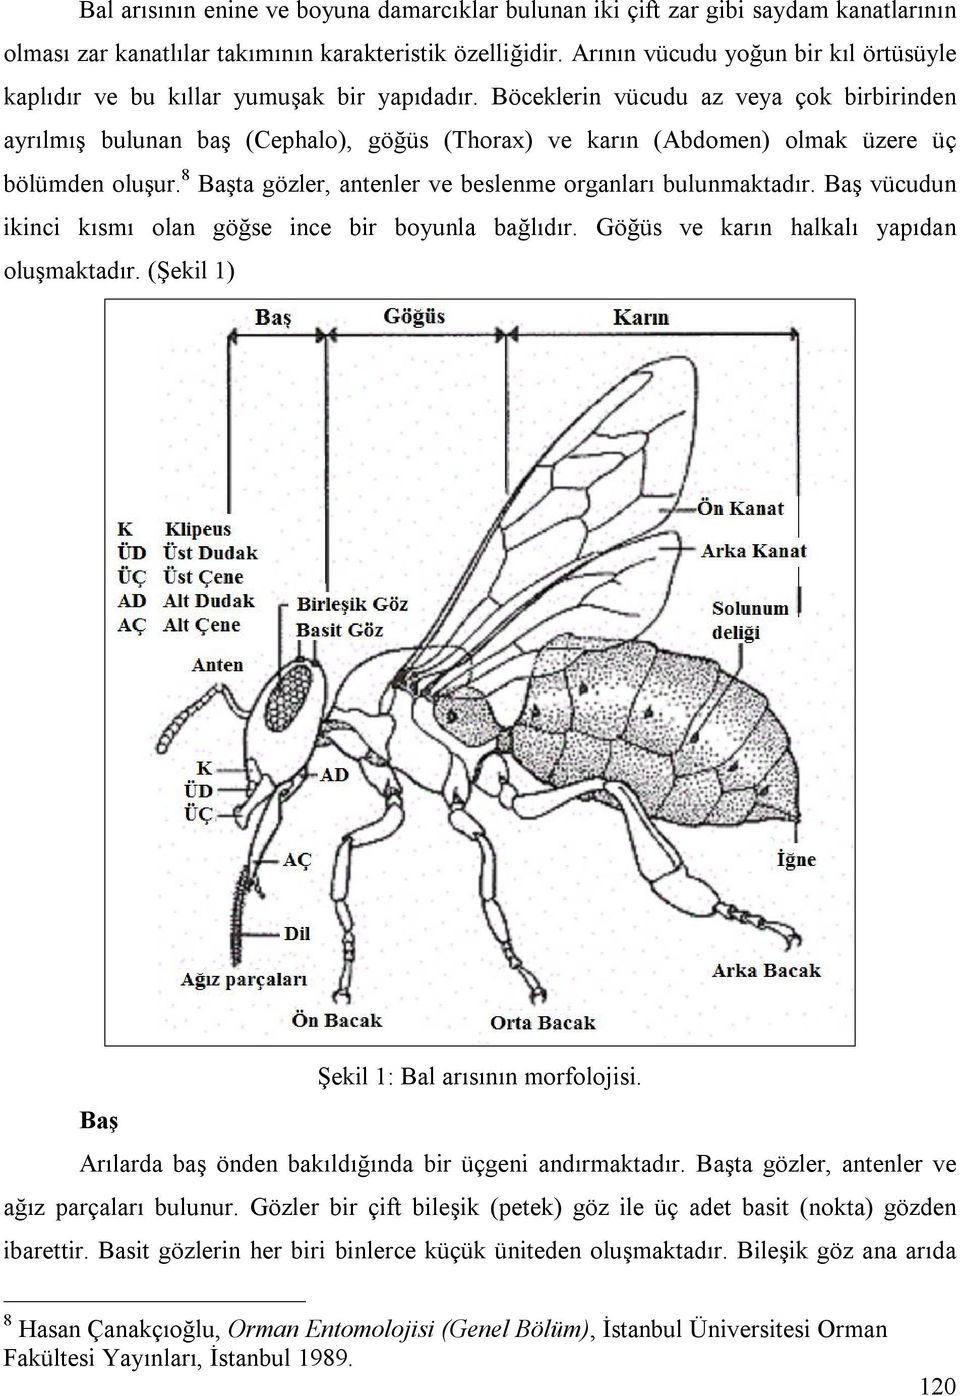 Böceklerin vücudu az veya çok birbirinden ayrılmış bulunan baş (Cephalo), göğüs (Thorax) ve karın (Abdomen) olmak üzere üç bölümden oluşur.